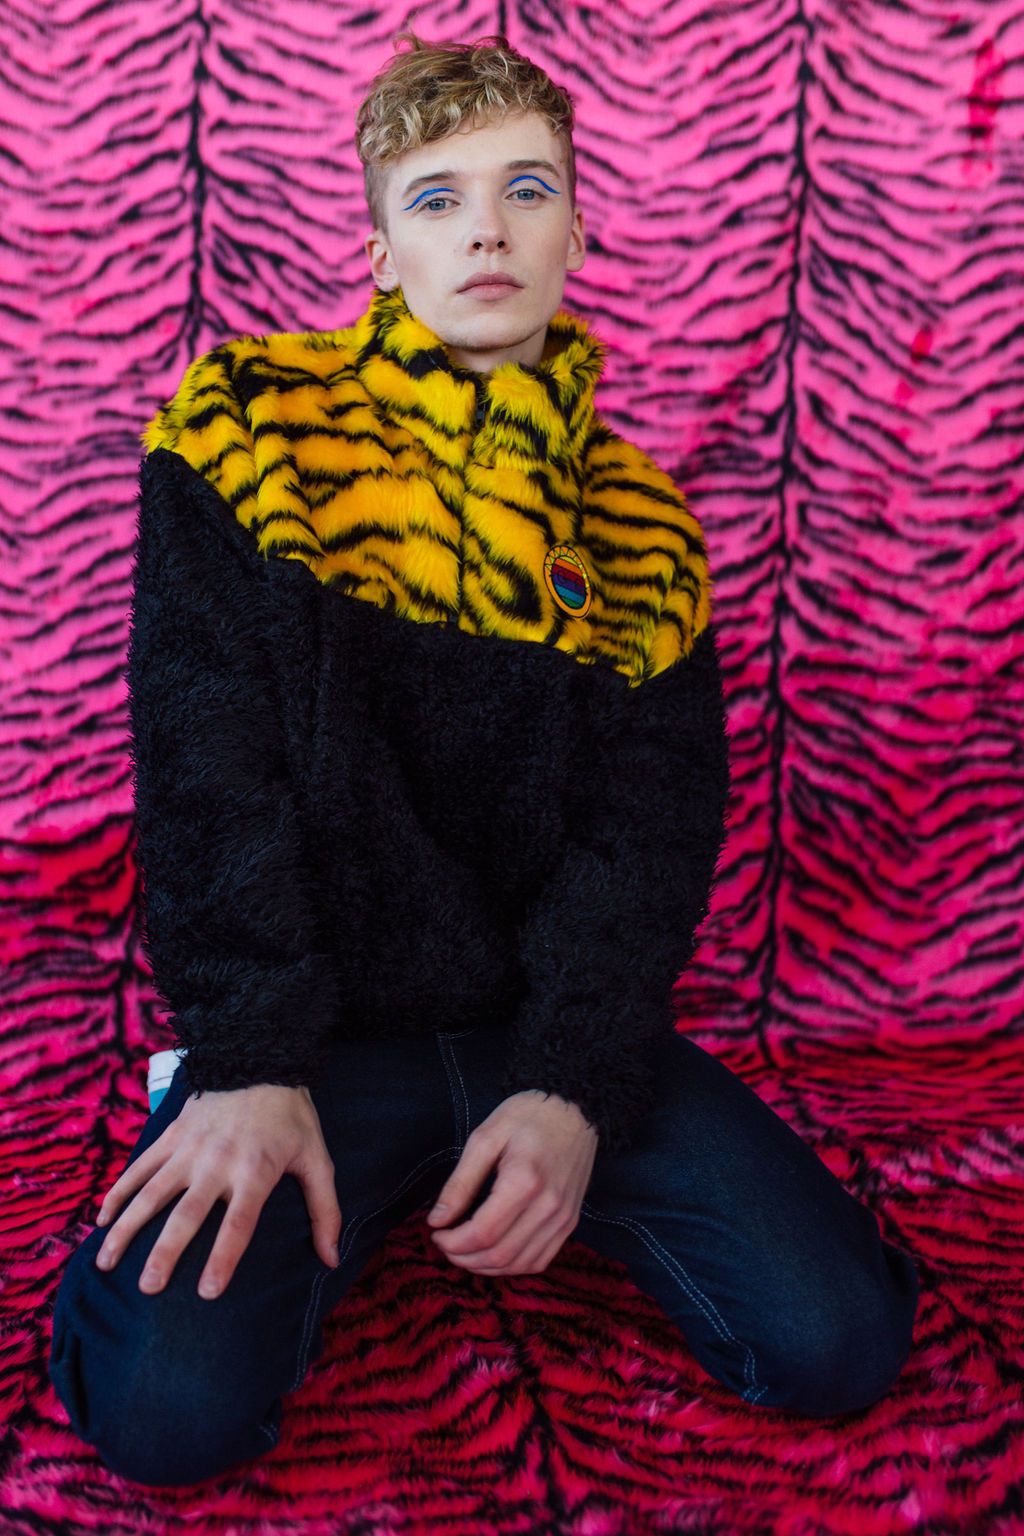 Half-Zip Pullover in Yellow Zebra and Black Teddy. - Jumper - Megan Crook